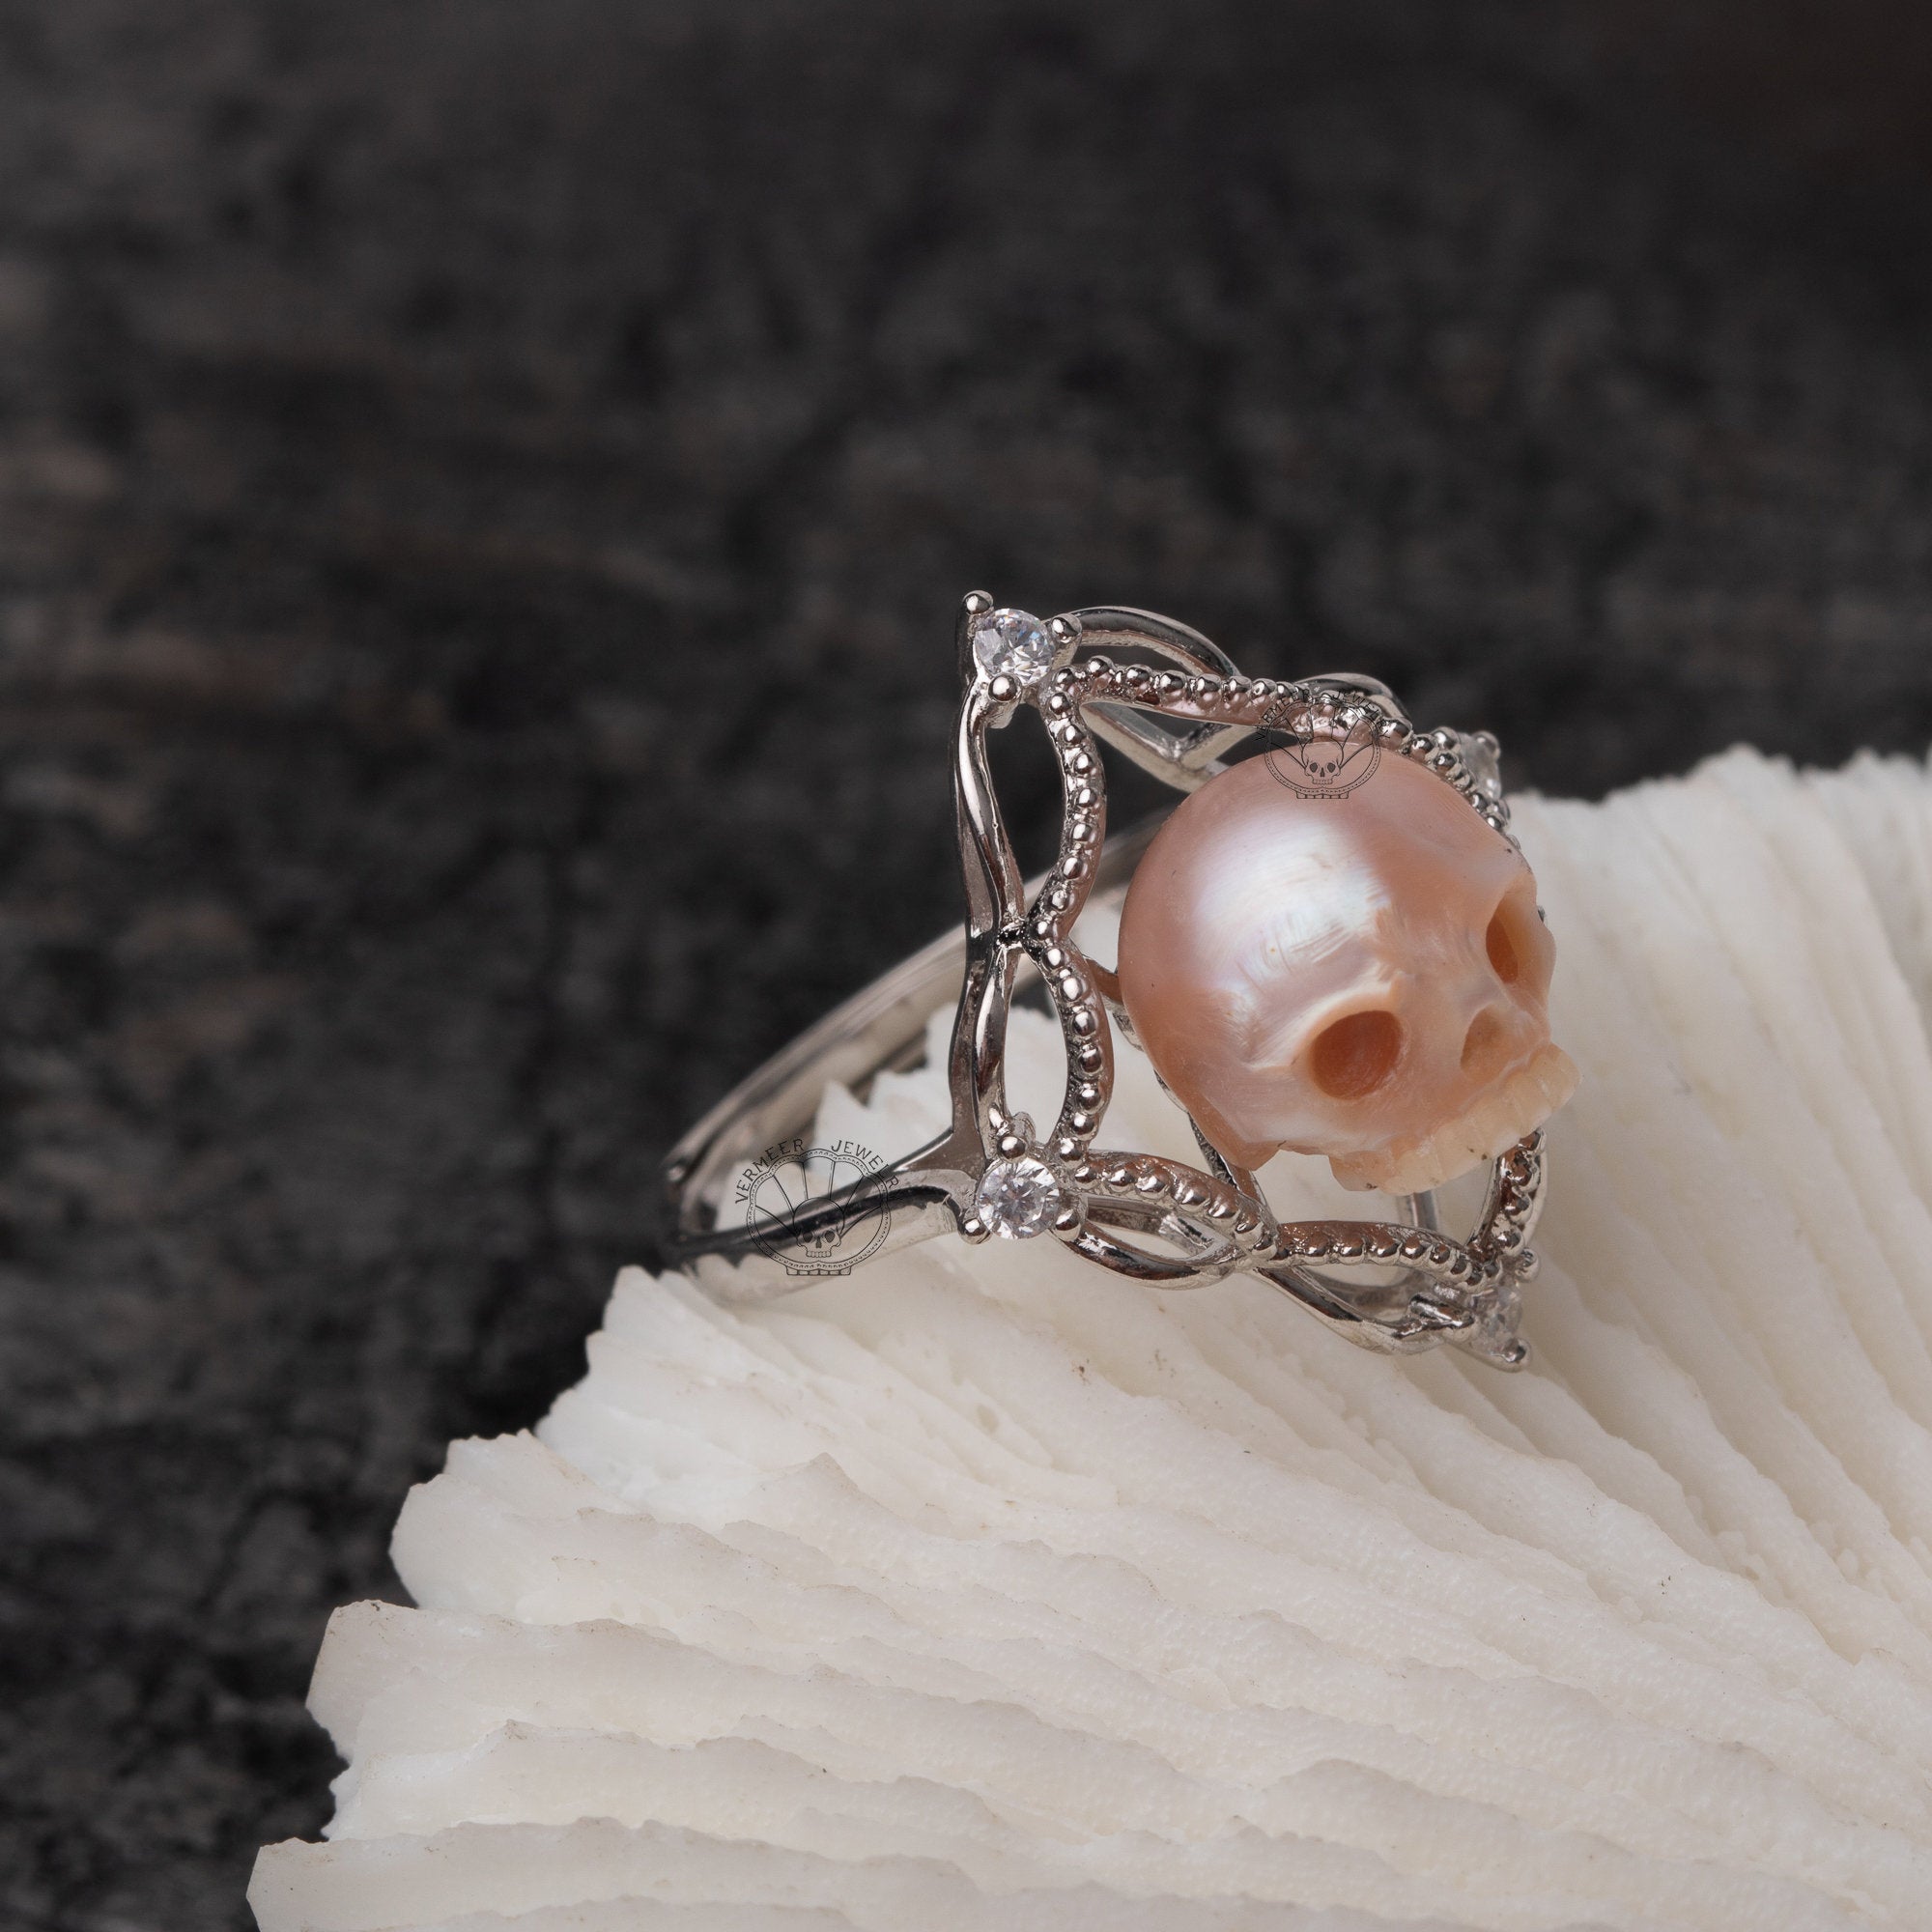 Antique Skull Ring Skull Engagement Ring in Sterling Silver Skull Ring For  Women | eBay